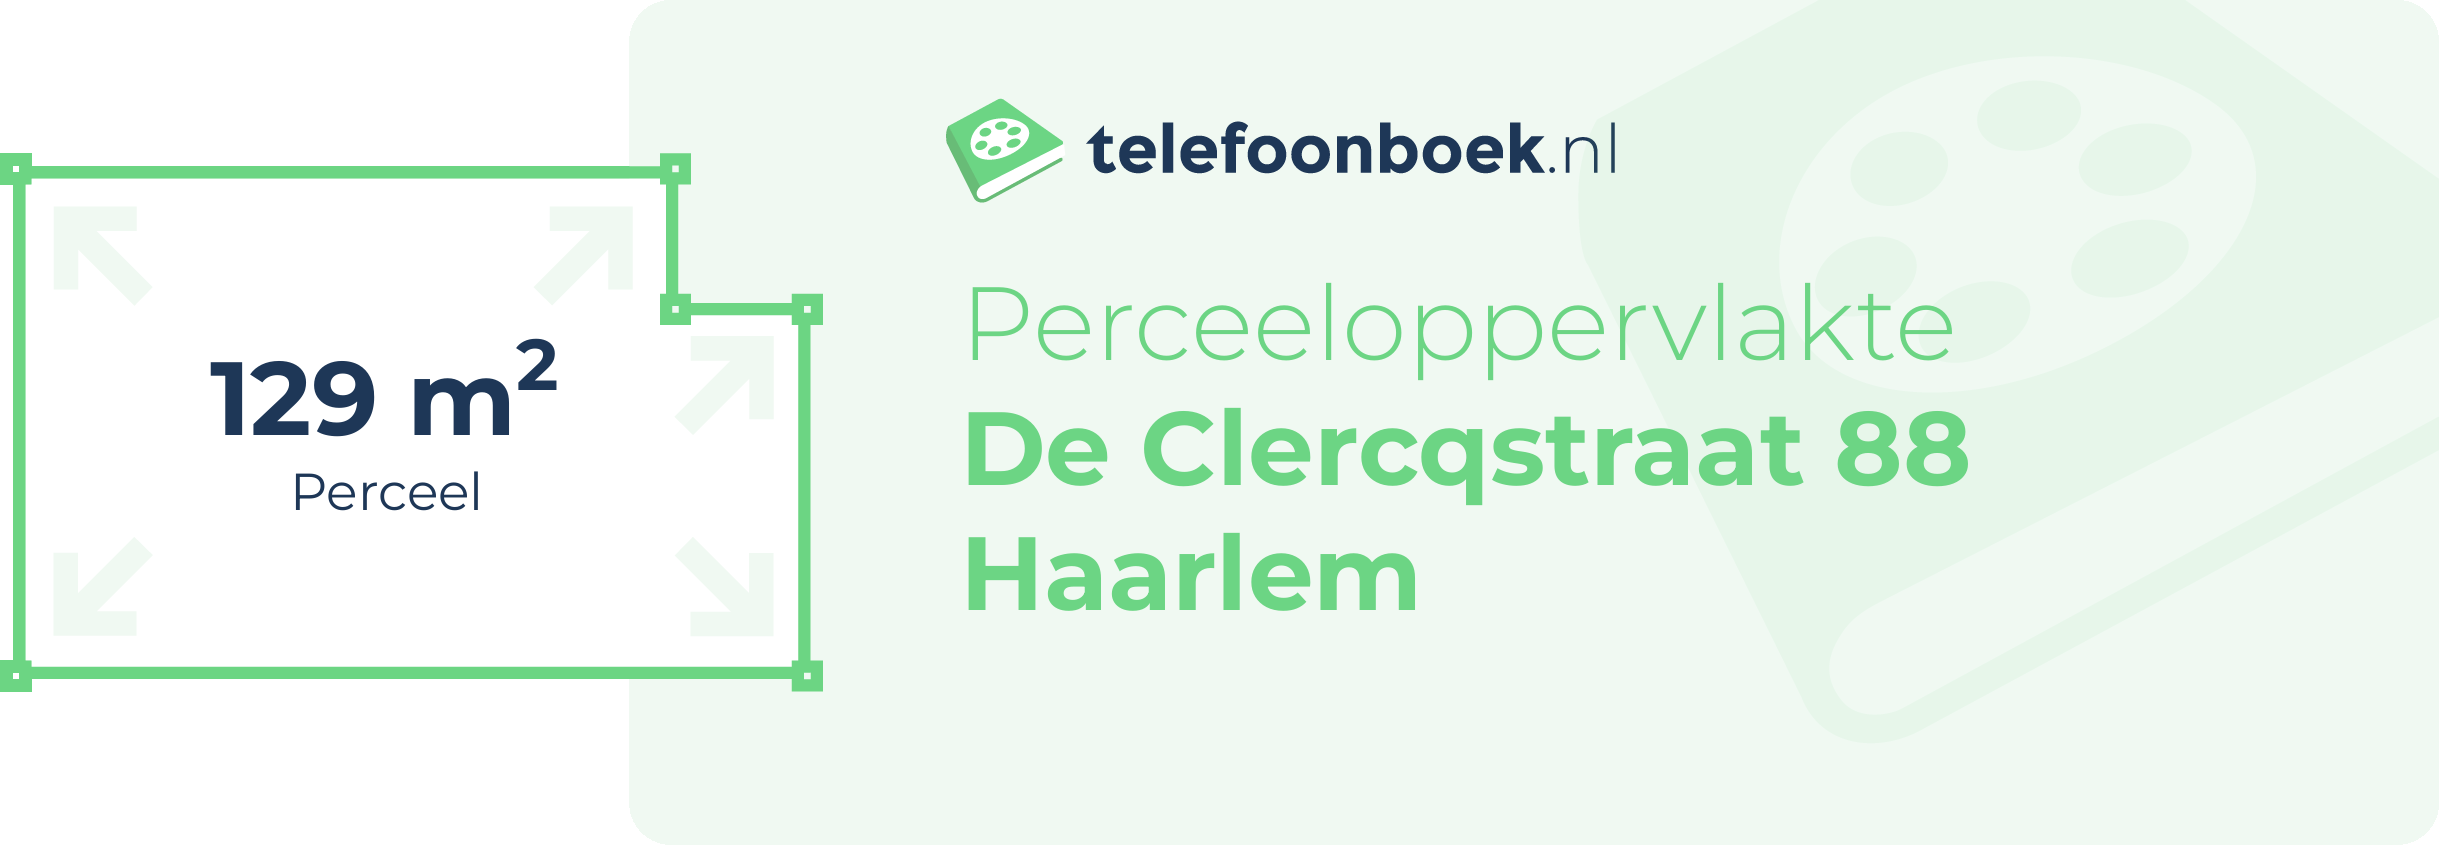 Perceeloppervlakte De Clercqstraat 88 Haarlem